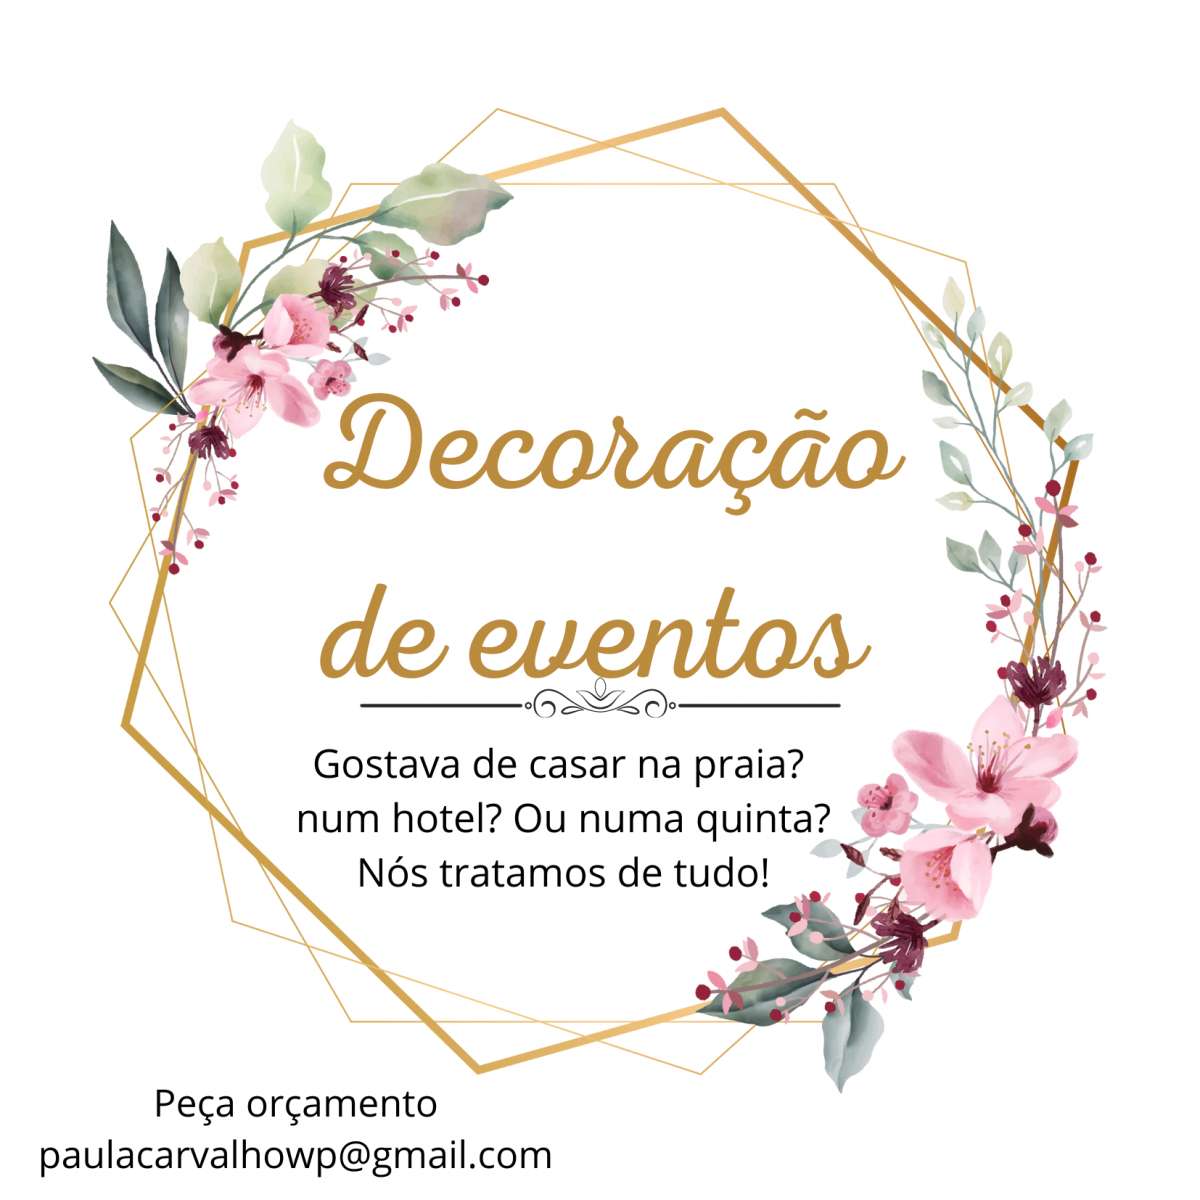 Paula Carvalho organização de eventos - Póvoa de Varzim - Wedding Planner